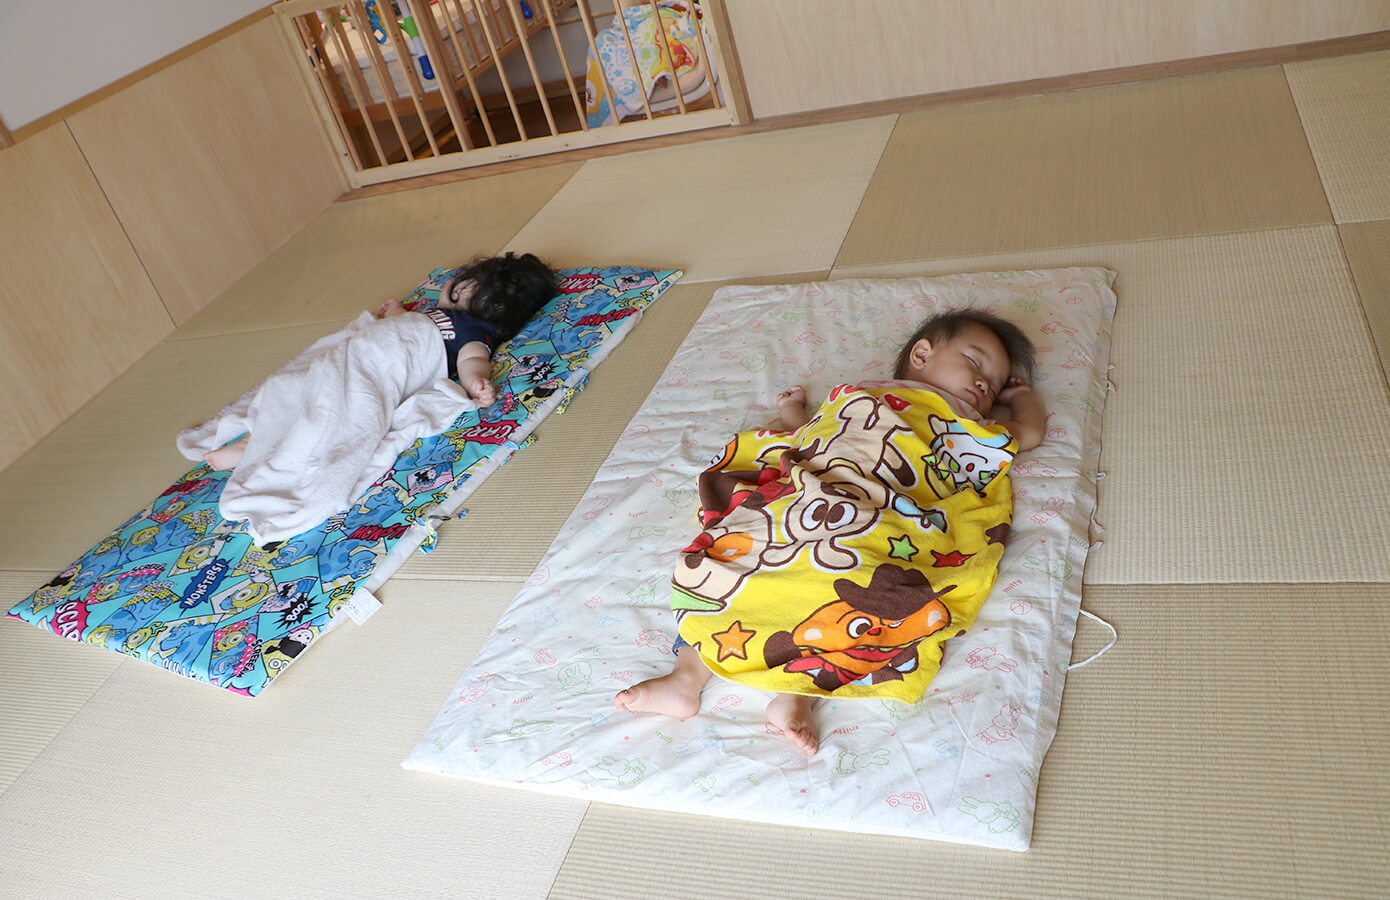 園舎内の琉球畳を敷いたスペースで畳の香り漂う中、すやすやお昼寝